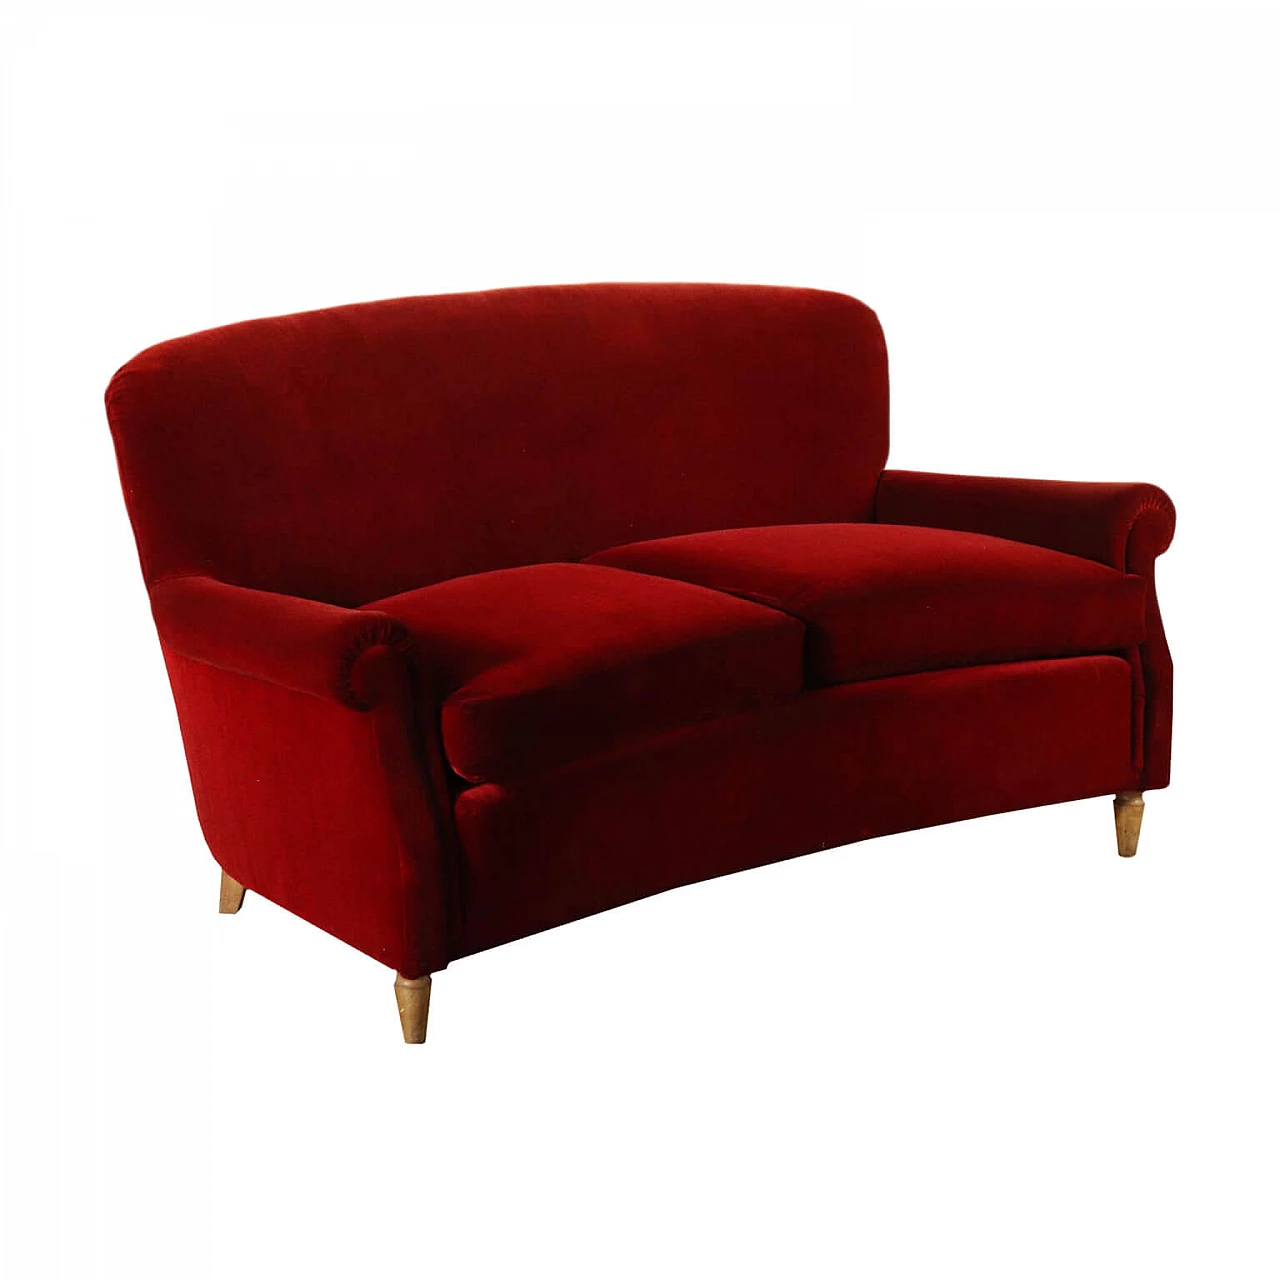 Red velvet sofa, 1940s 1125799